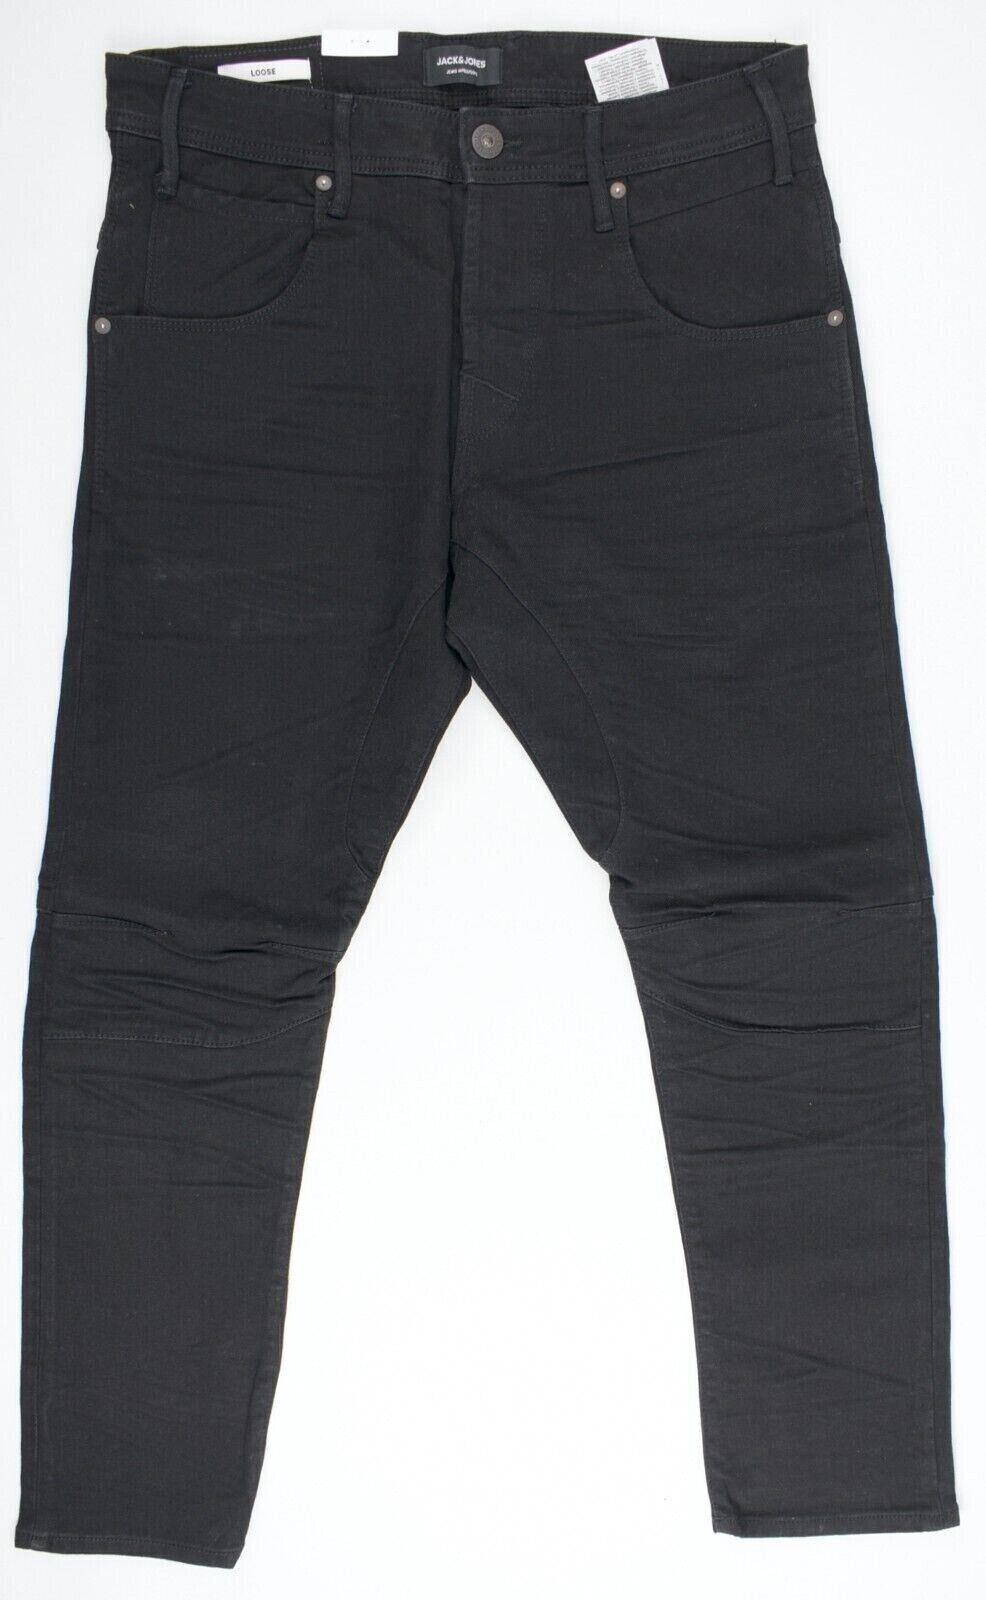 JACK & JONES Men's CHRIS Loose Fit High Rise Denim Jeans, Black, size W38 L32